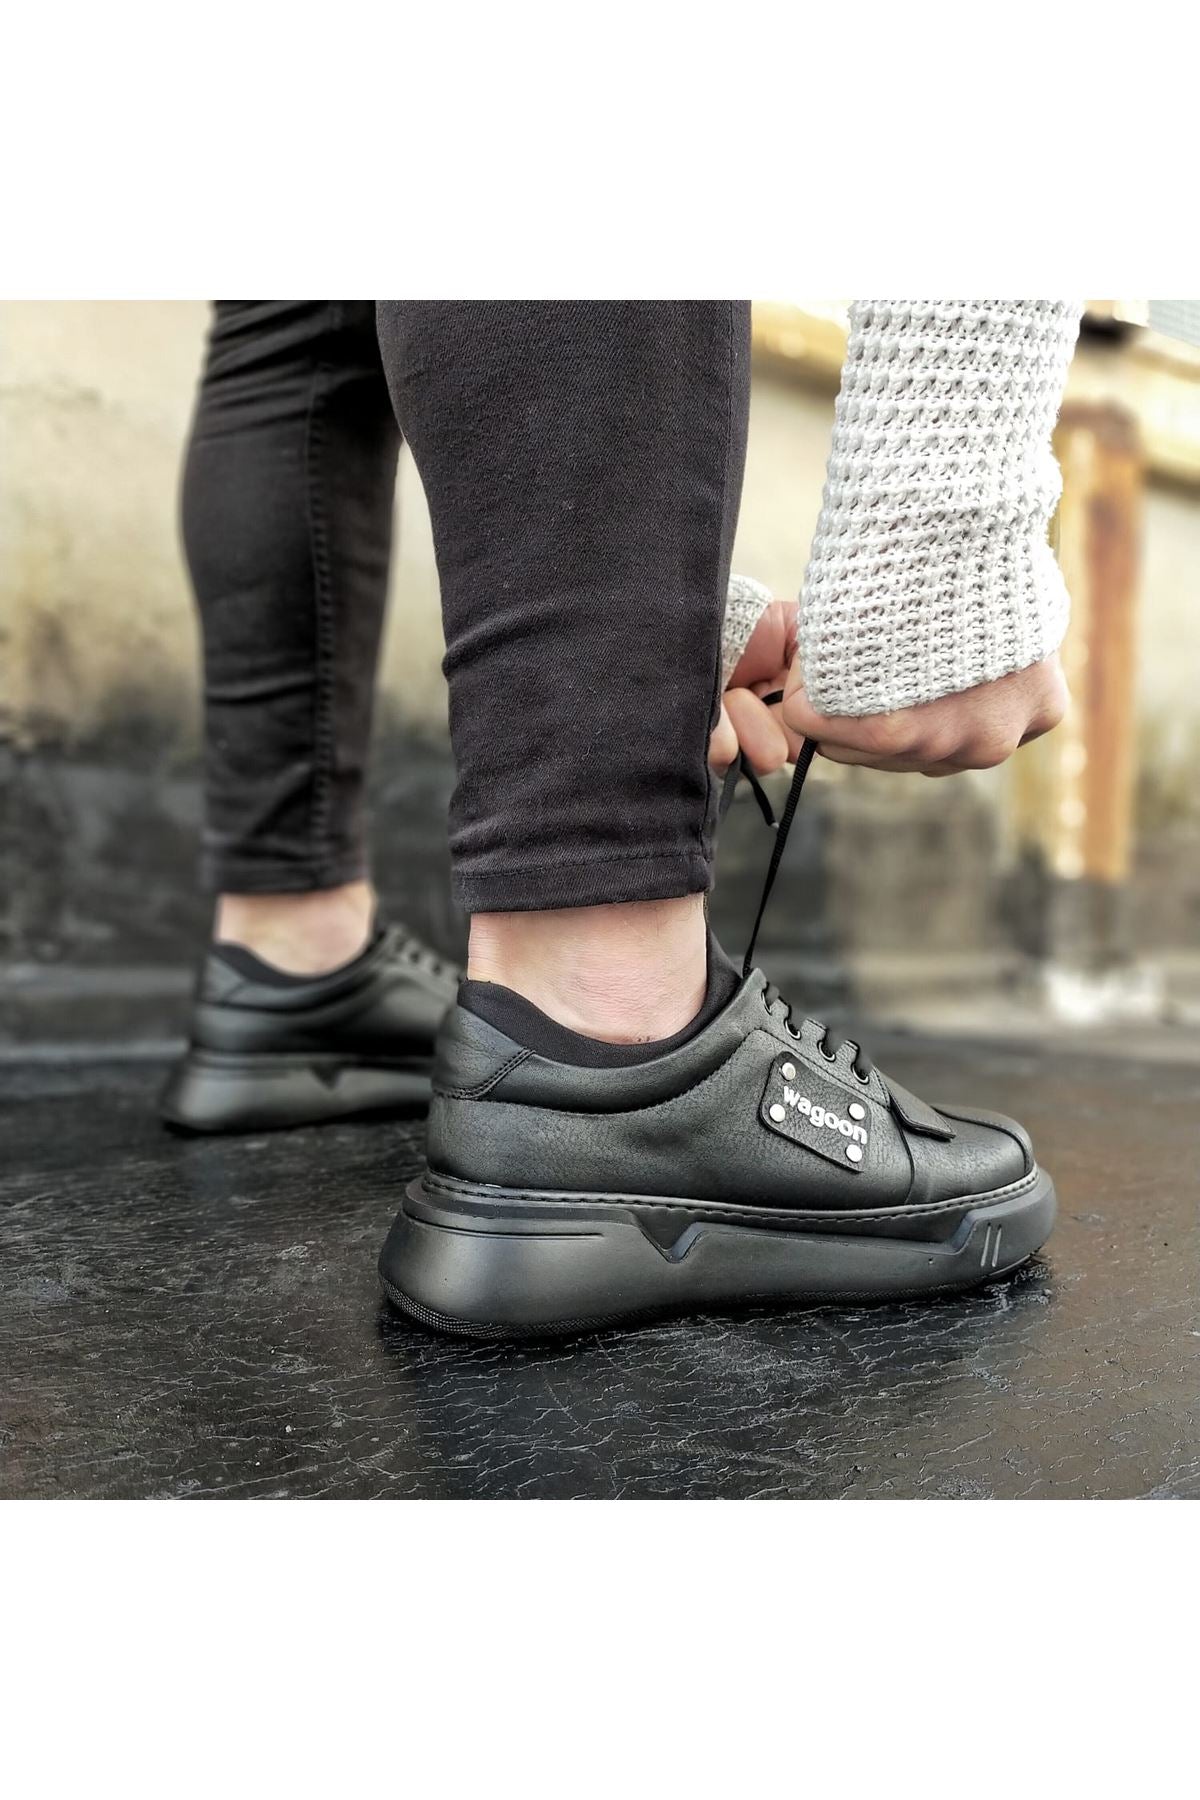 Original Design WG018 Coal Mens High Sole Shoes - STREETMODE™